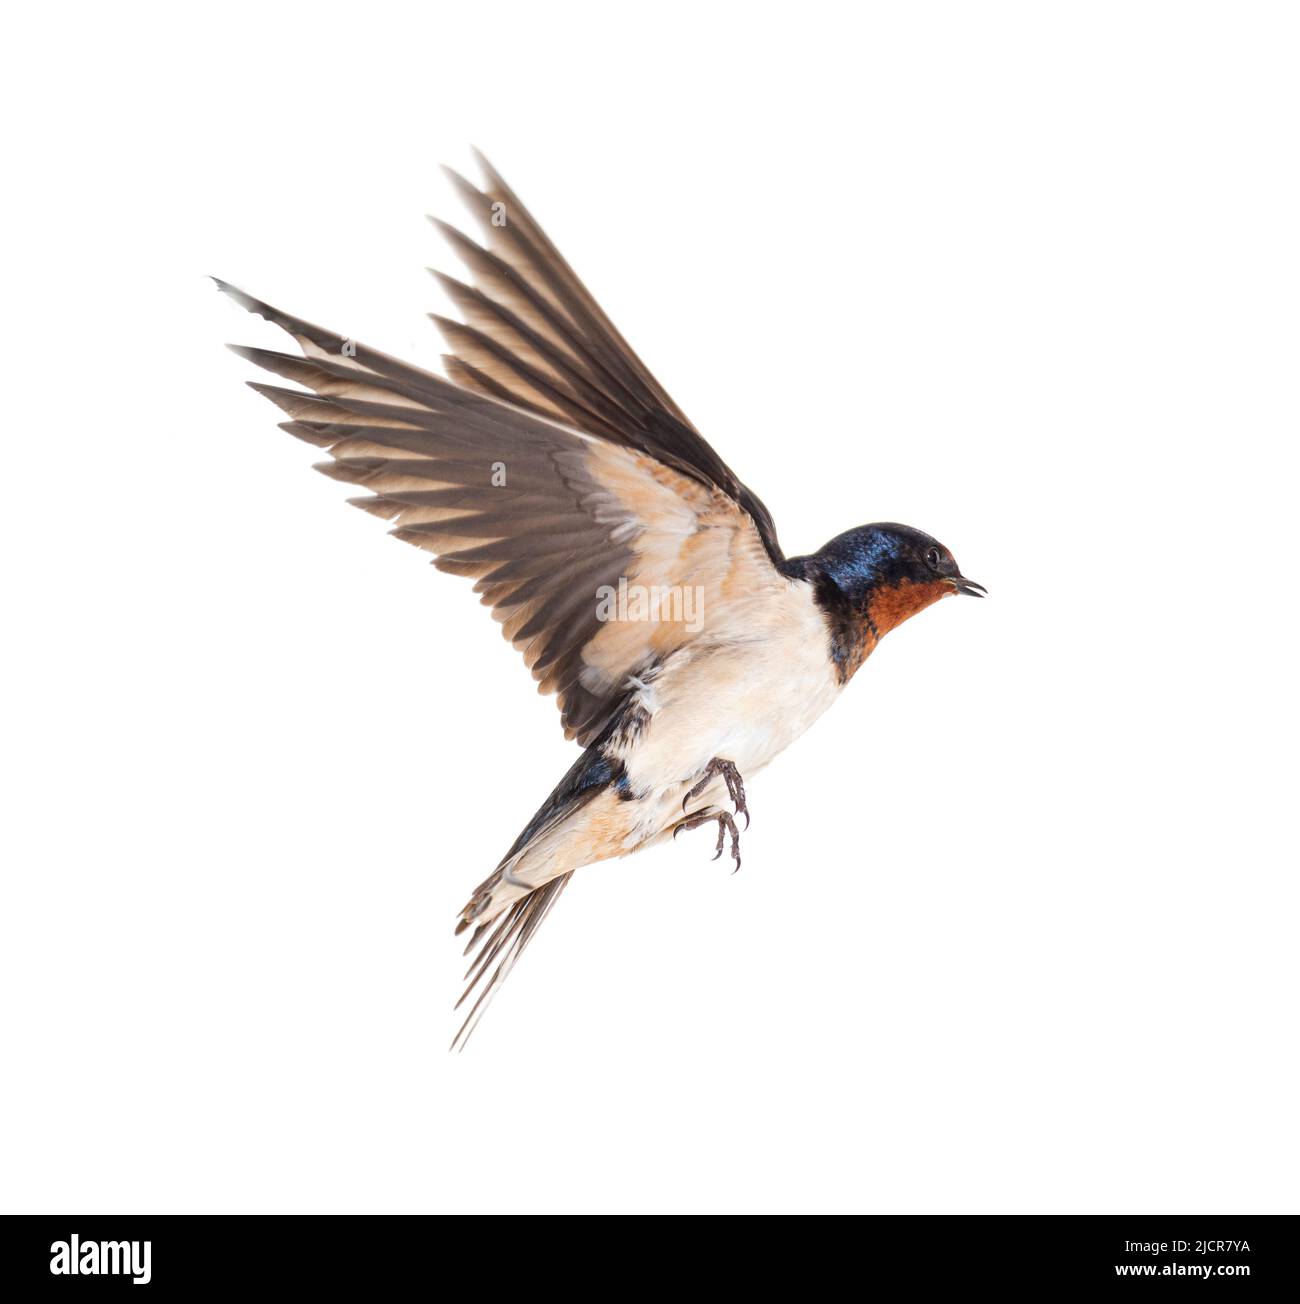 Granero Swallow Alas voladoras se extienden, pájaro, Hirundo rustica, volando contra fondo blanco Foto de stock